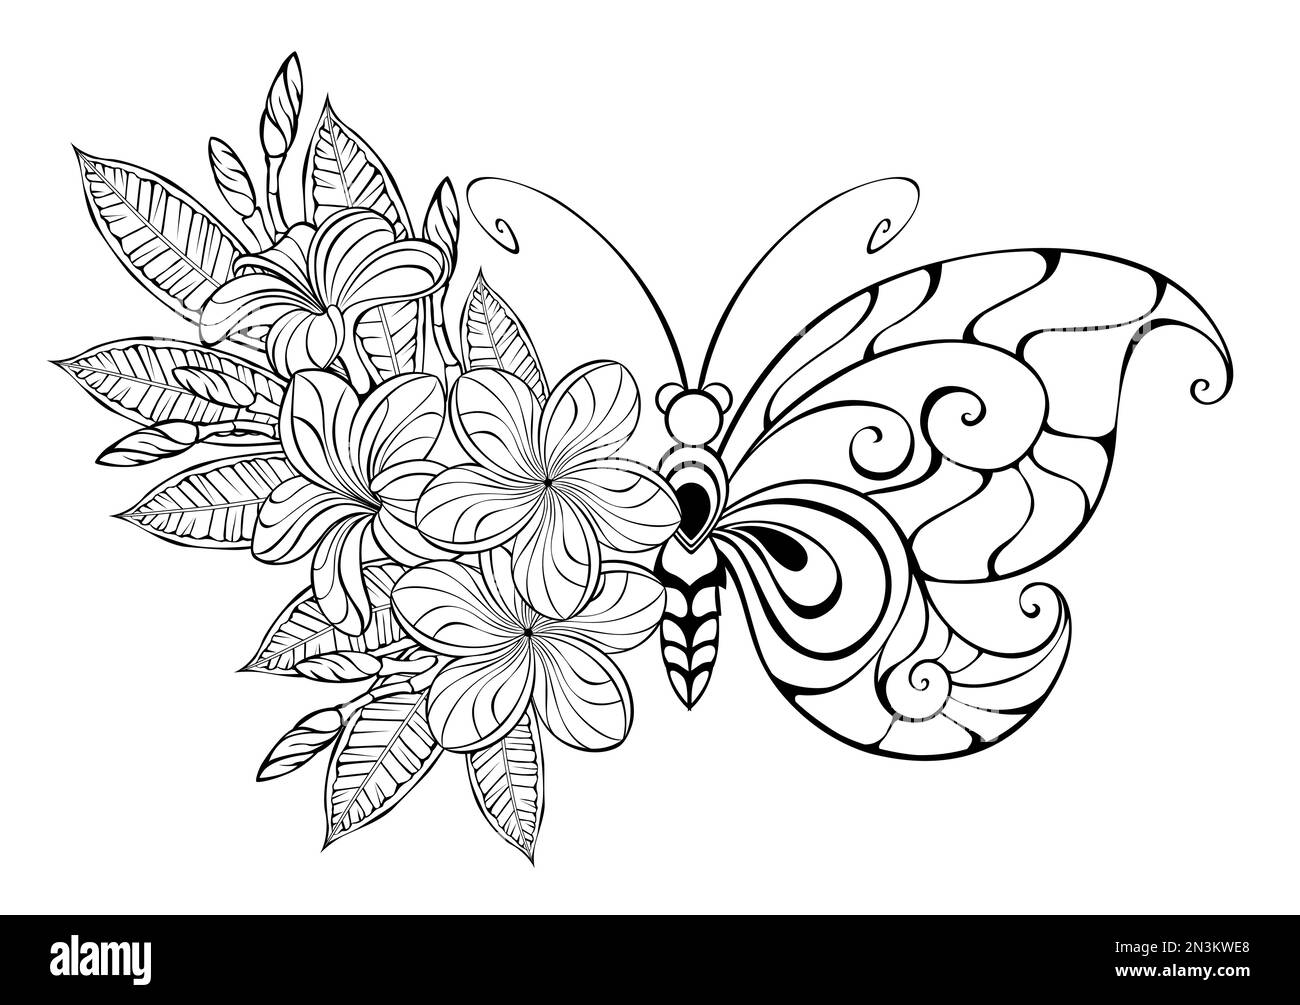 Konturierter, blumiger Schmetterling mit Fantasy-Flügel, dekoriert mit Blumen und Blättern einer exotischen, konturierten Plumeria auf weißem Hintergrund. Blumenschmetterling. Stock Vektor